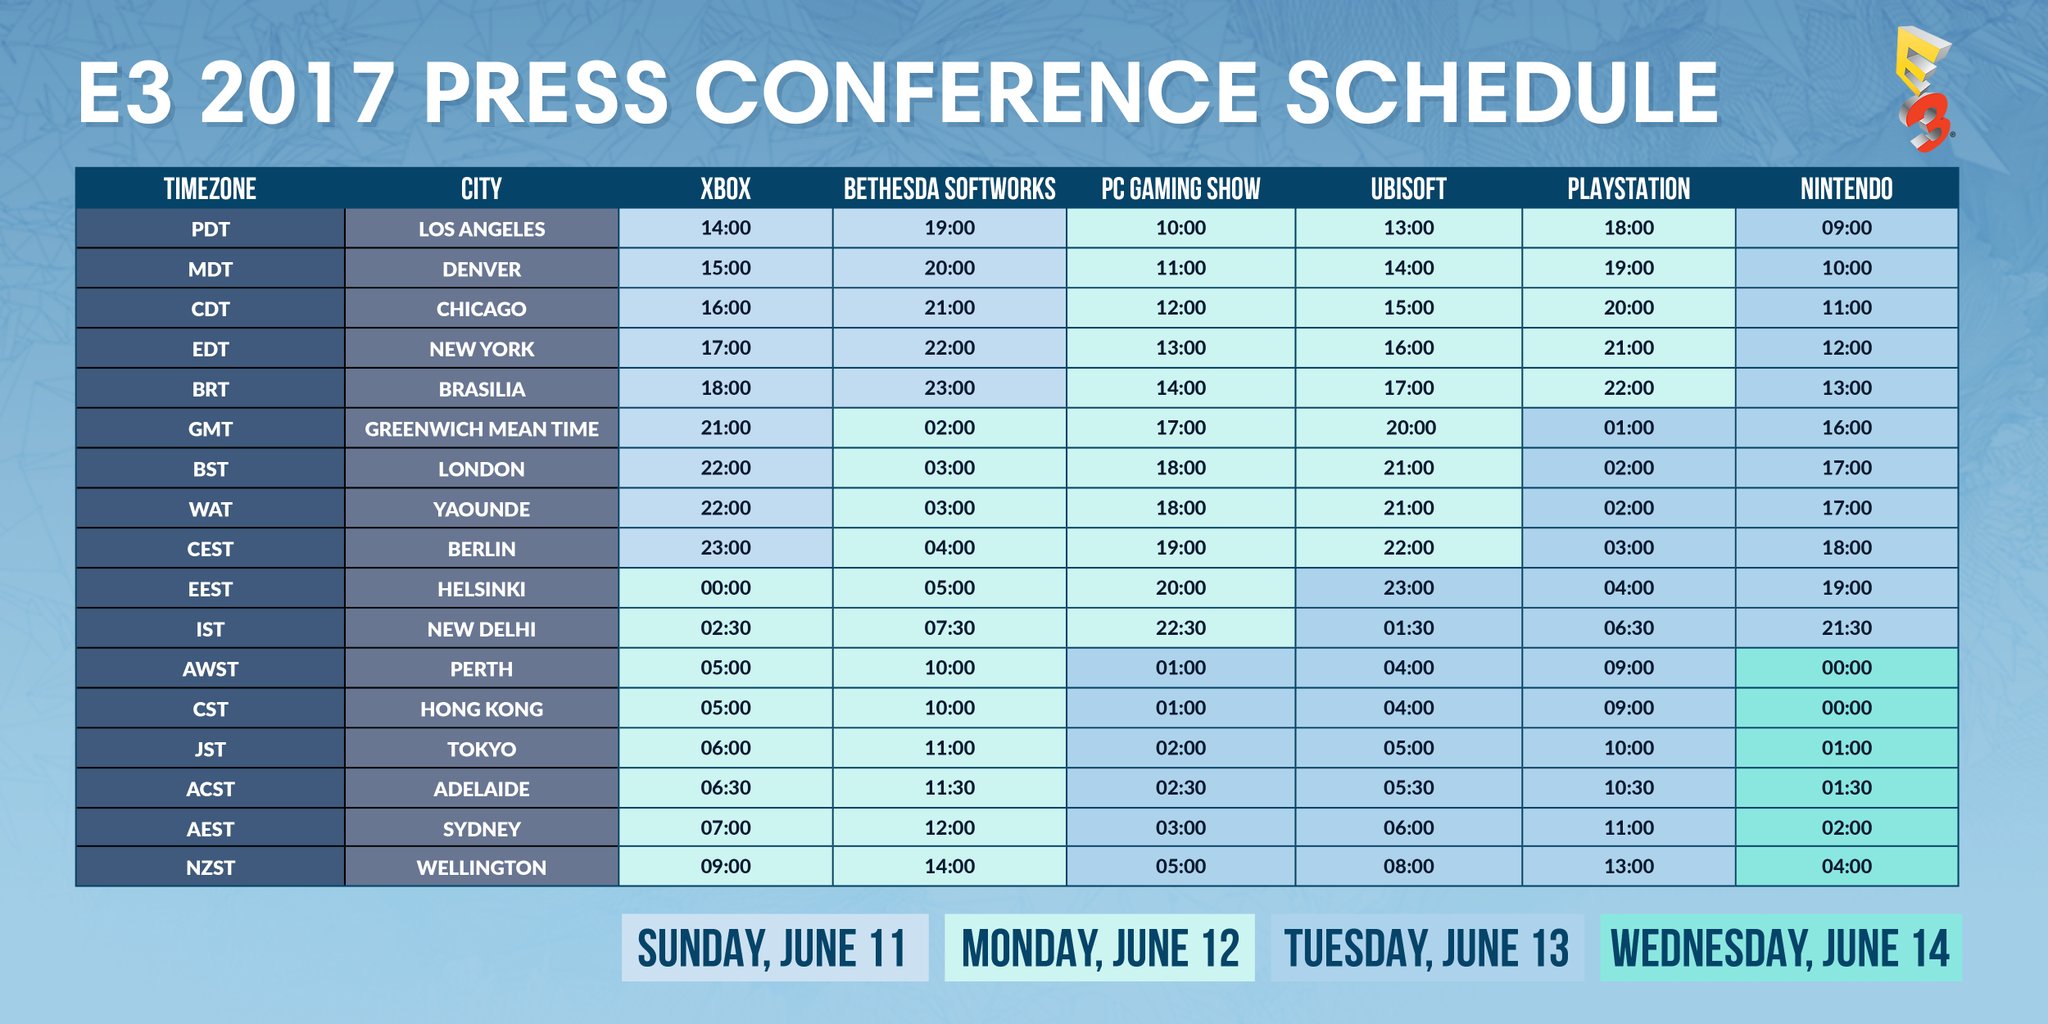 E3 2017 schedule full